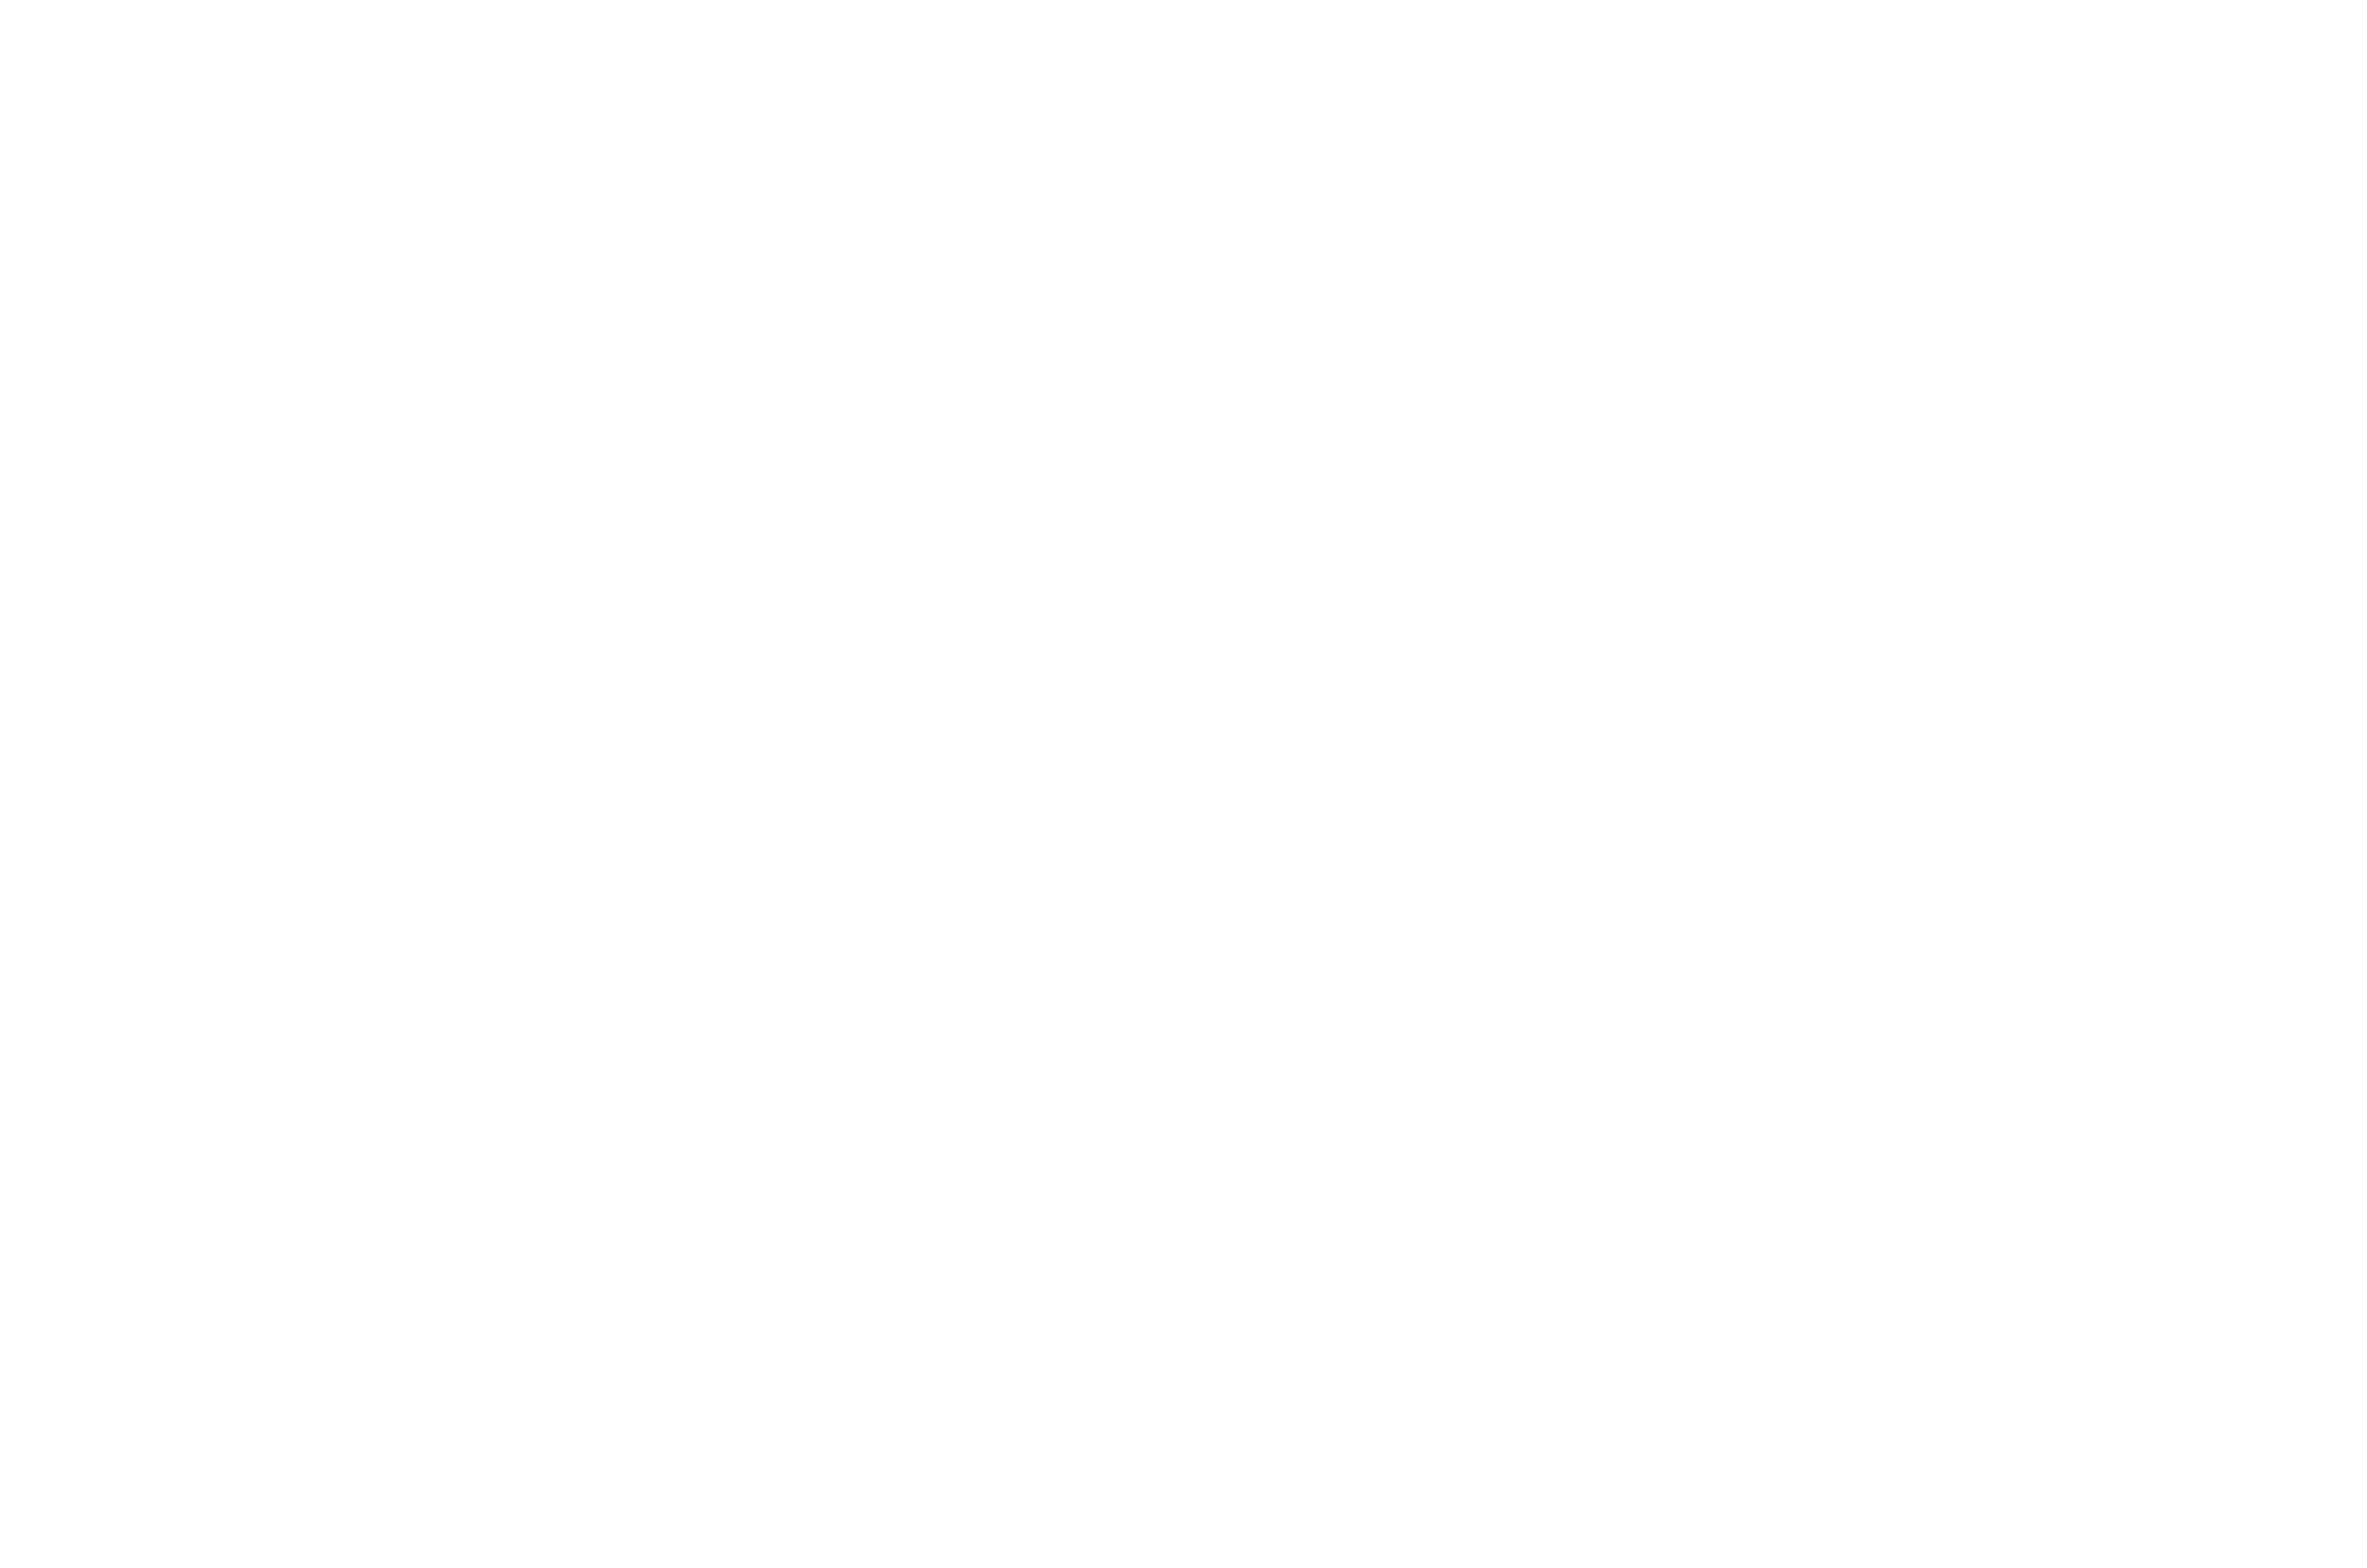 OriginalInfluence